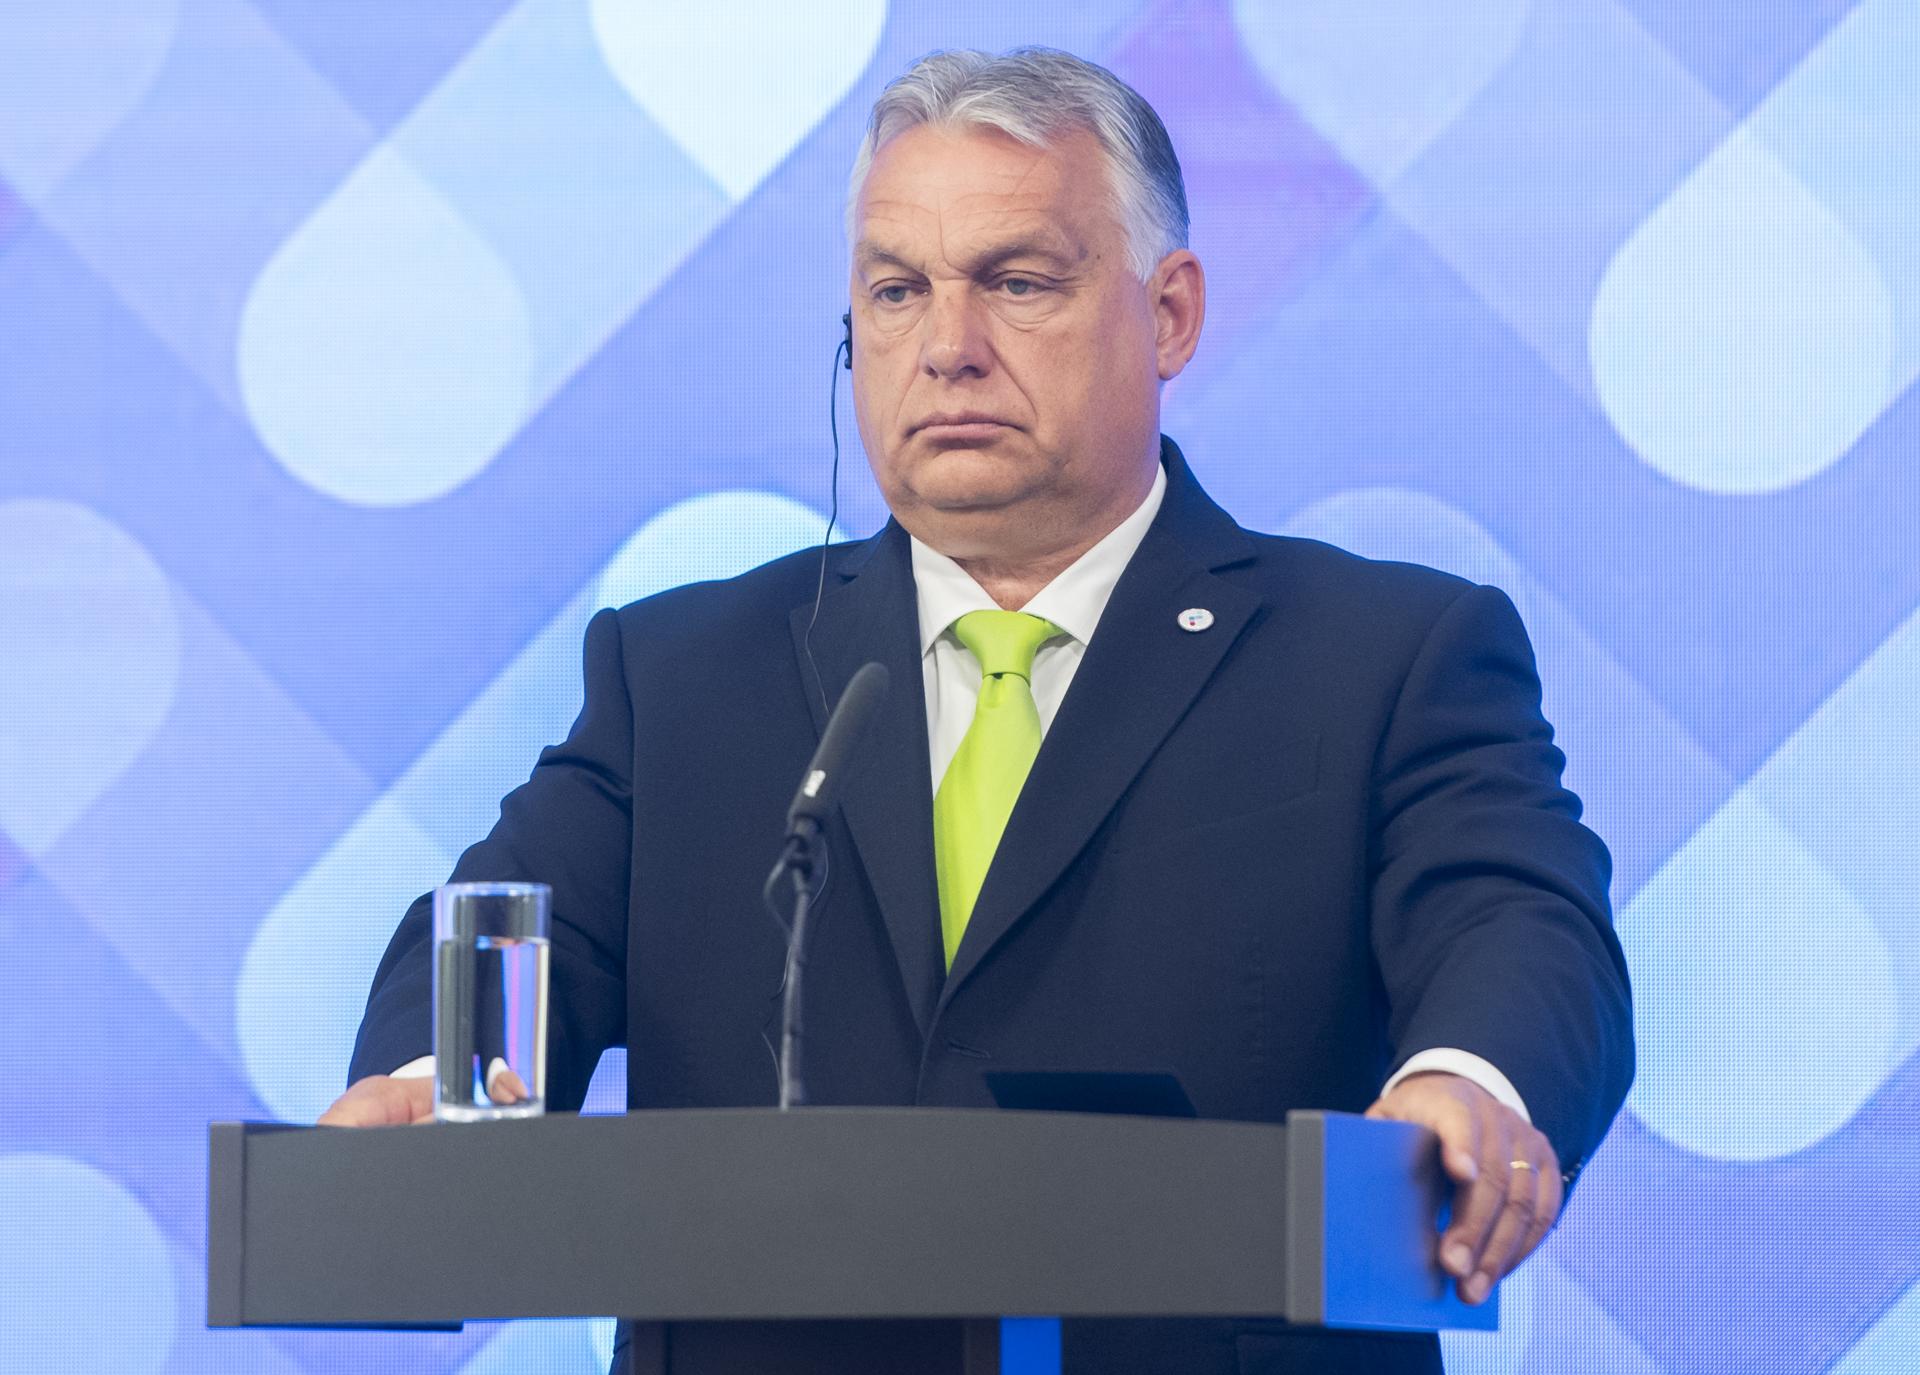 Vzbura wagnerovcov väčšmi potvrdila silu Putina, než jeho slabosť, vyhlásil Orbán